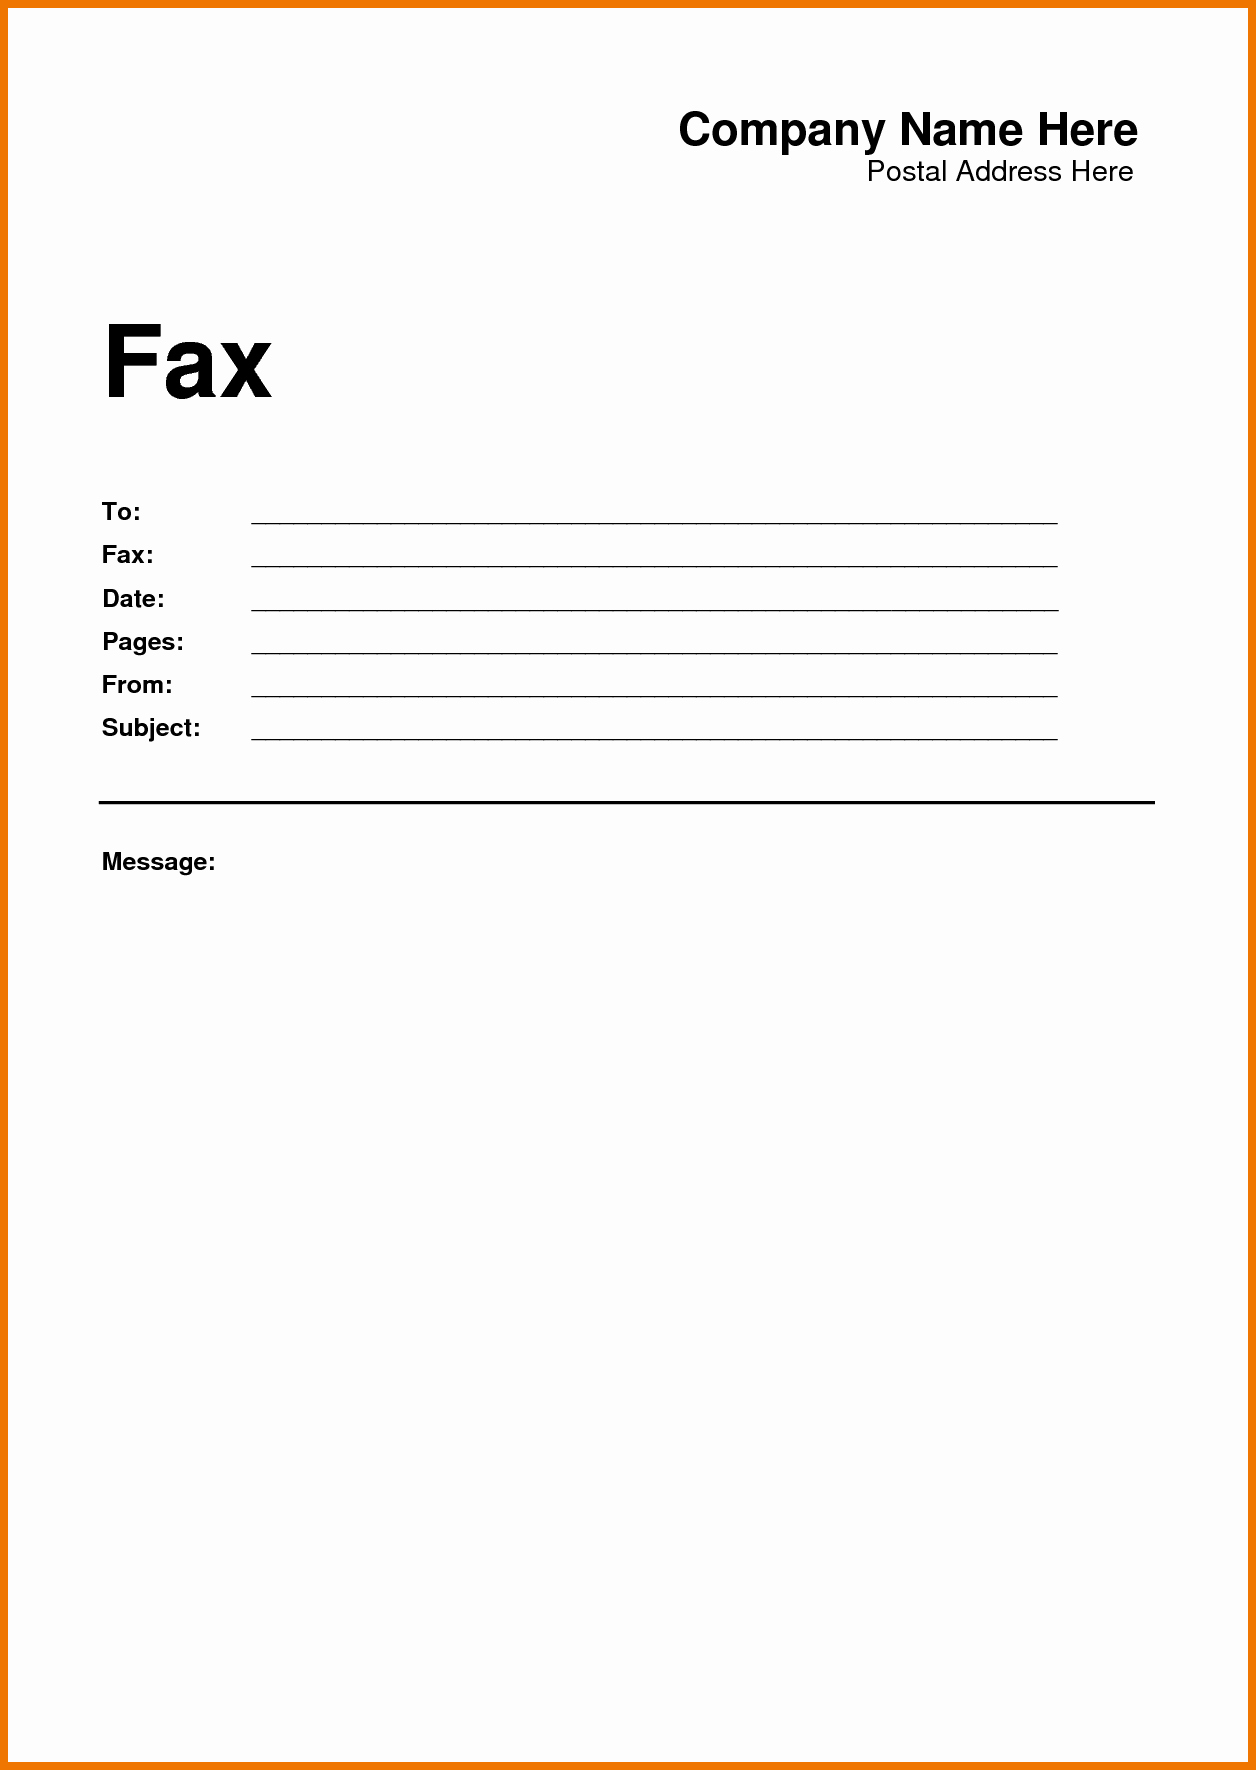 Fax Cover Sheet Template Microsoft Beautiful Microsoft Fice Fax Template Portablegasgrillweber